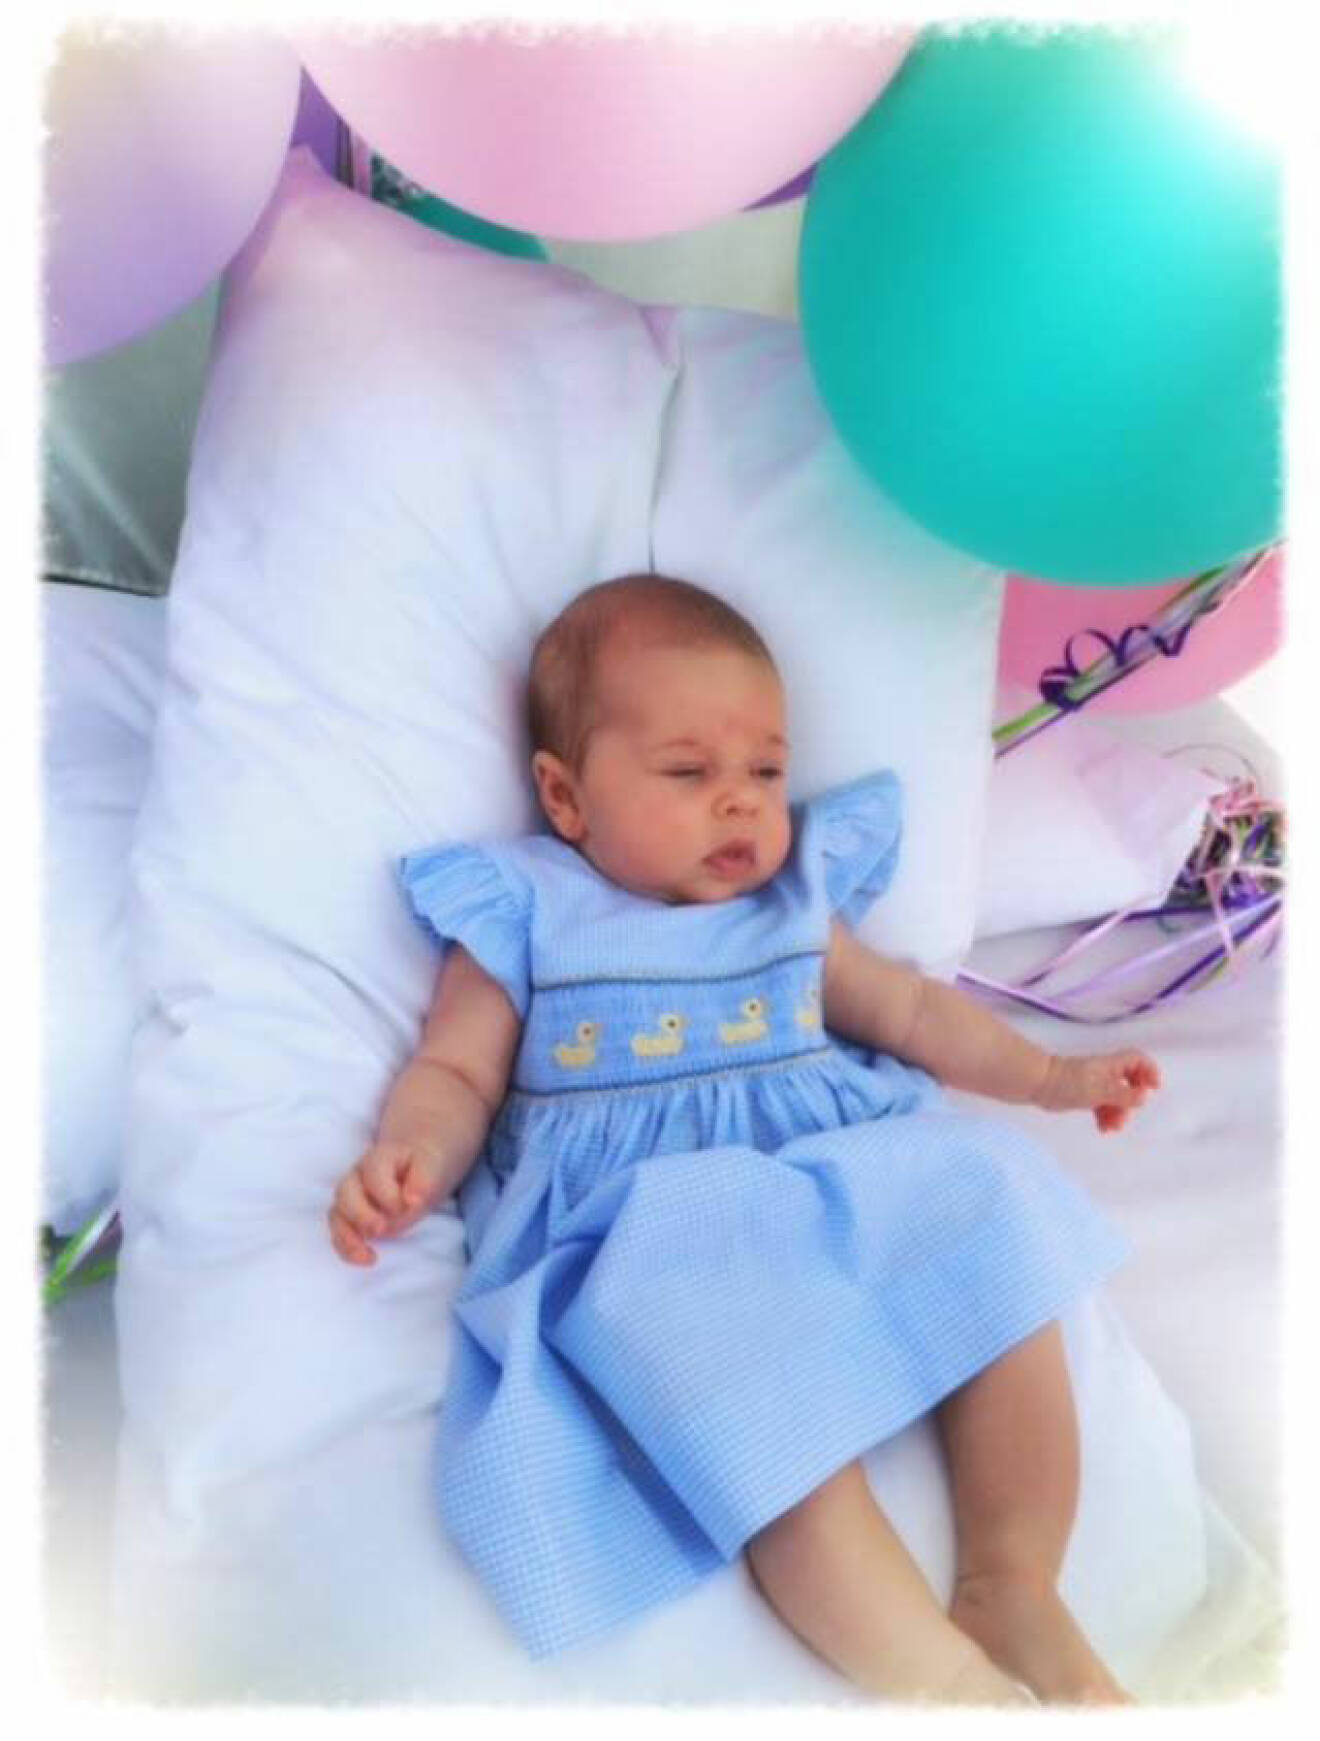 Prinsessan Leonore som bebis, delad av Madeleine på Facebook 2014. 